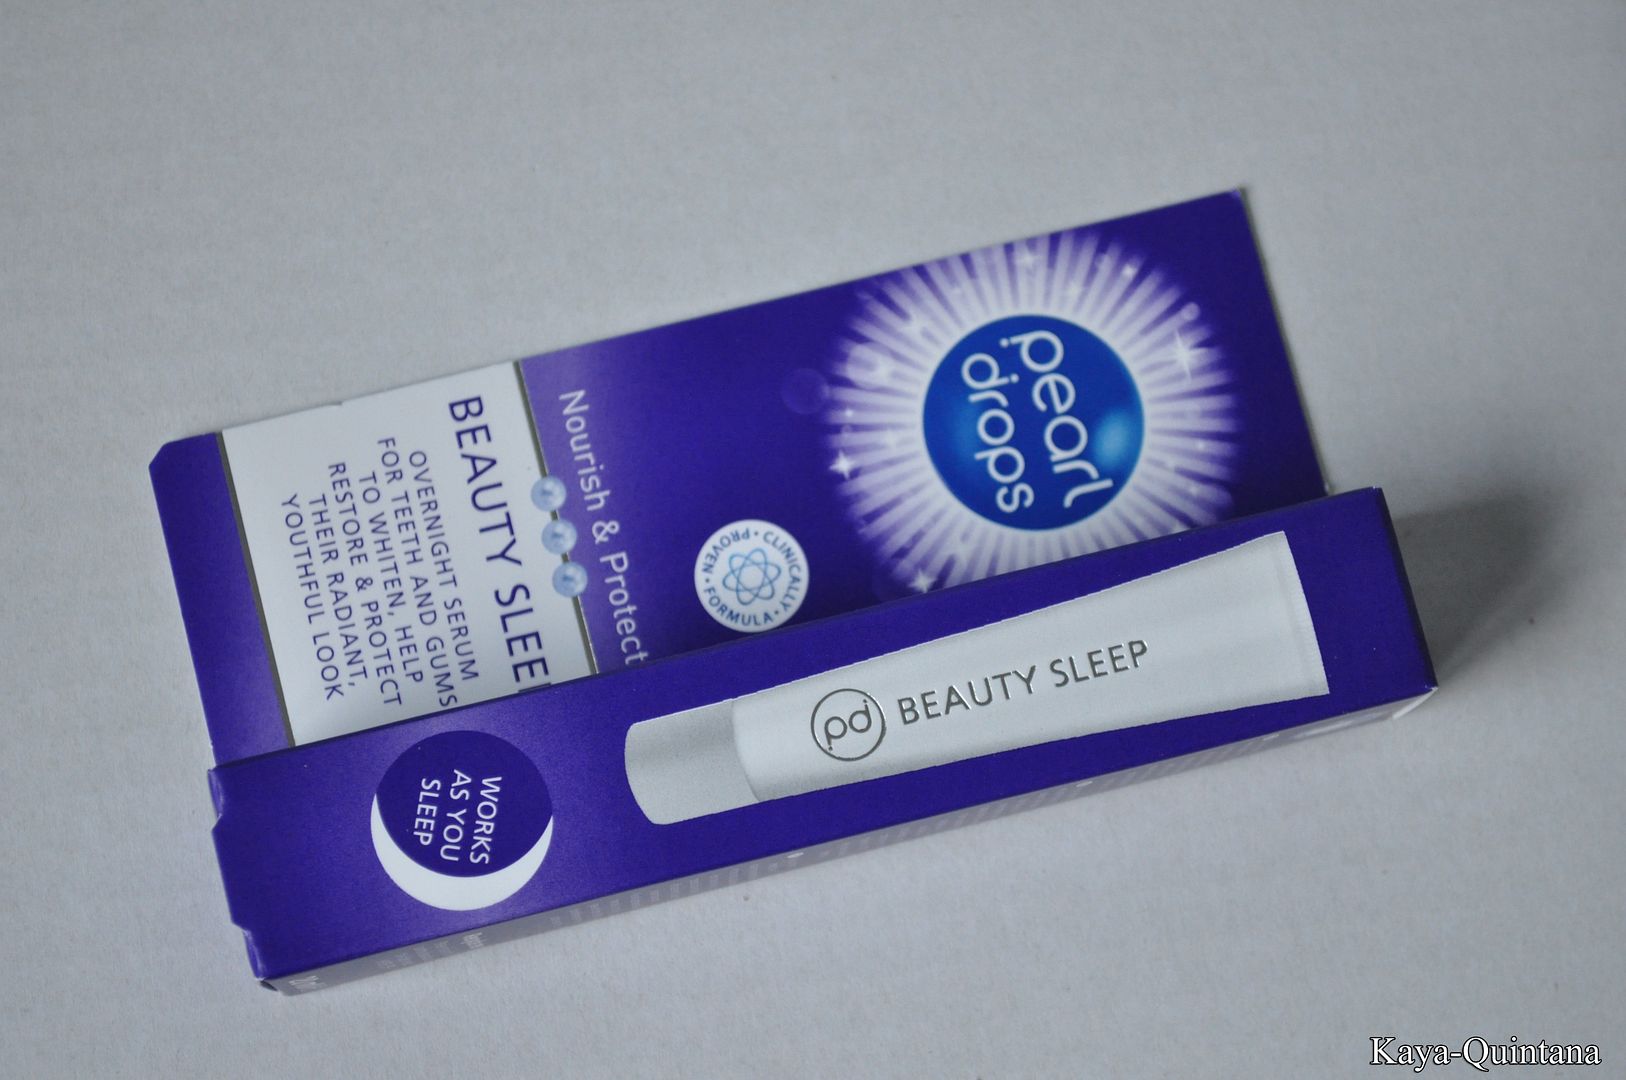 beauty sleep serum van pearl drops